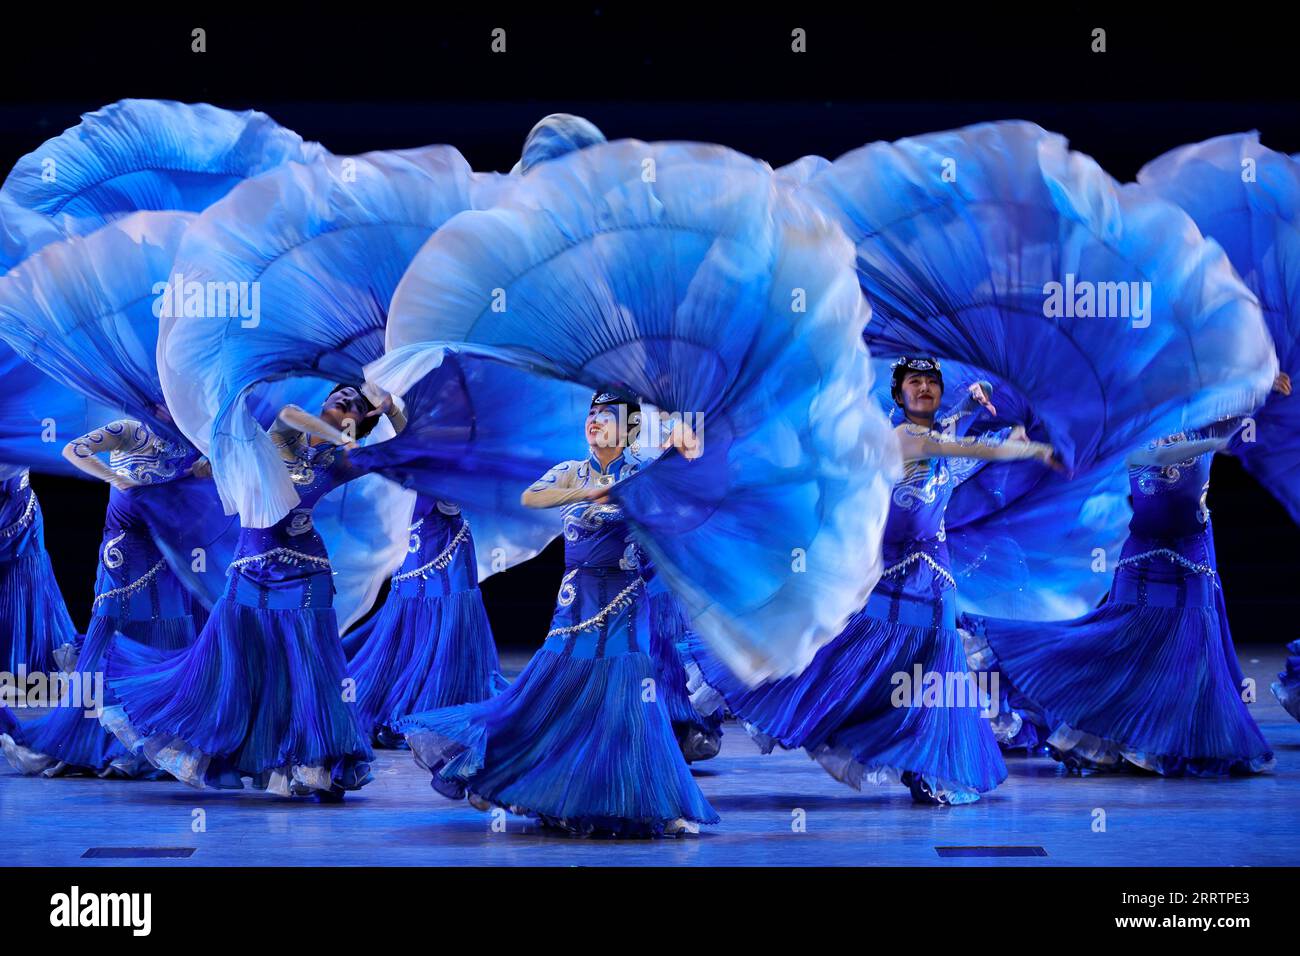 230804 -- CHENGDU, le 4 août 2023 -- des artistes se produisent lors de l'un des spectacles sur le thème Be Together au Village des 31e Jeux mondiaux universitaires d'été de la FISU à Chengdu, dans la province du Sichuan du sud-ouest de la Chine, le 4 août 2023. Chengdu UniversideCHINA-CHENGDU-WORLD UNIVERSITY JEUX-PERFORMANCE CN ShenxBohan PUBLICATIONxNOTxINxCHN Banque D'Images